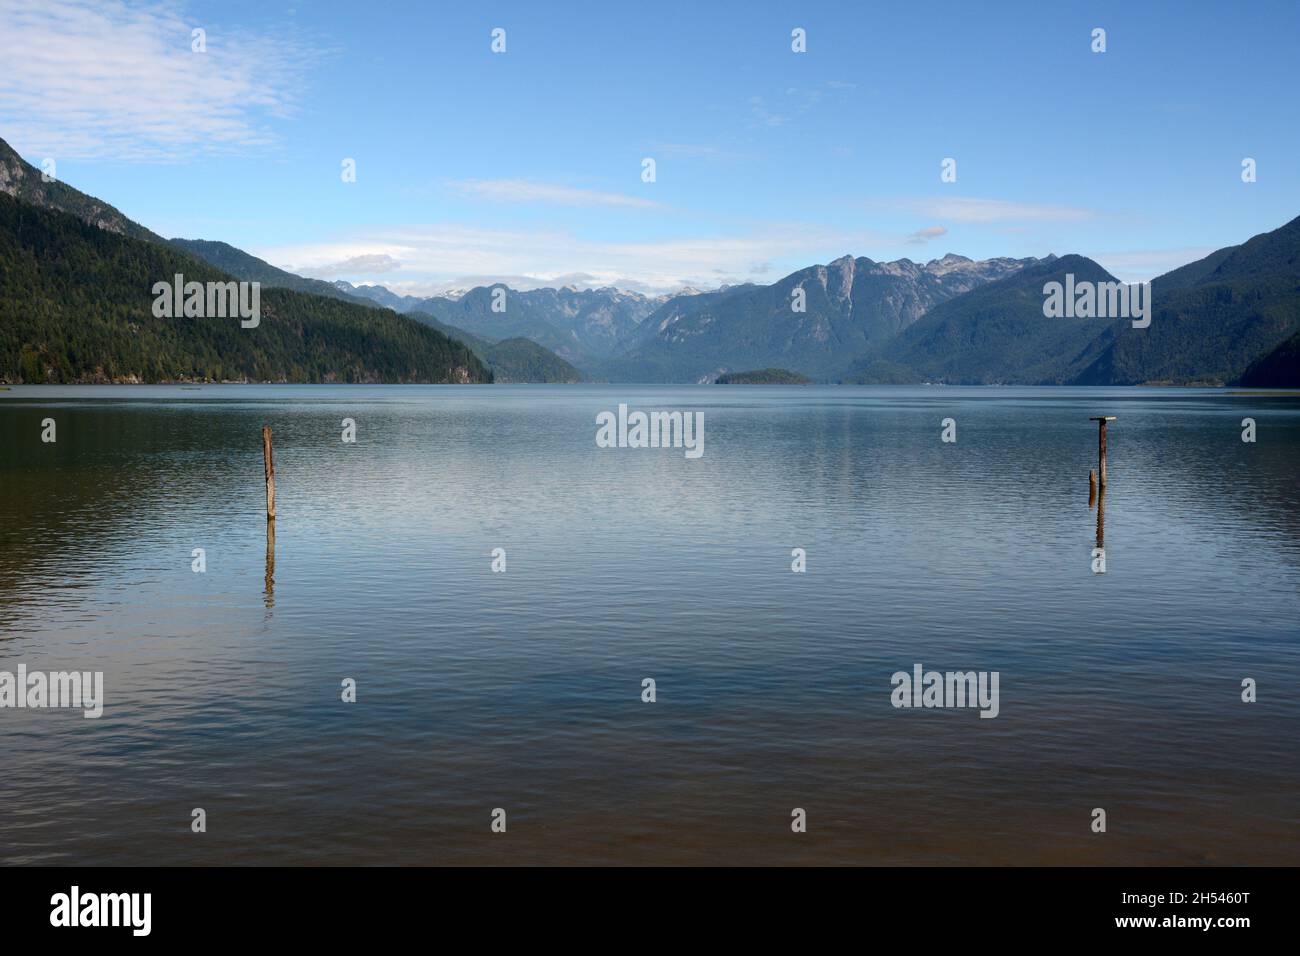 Pitt Lake, einer der größten Gezeitenseen der Welt, und die Berge der Garibaldi Range, in der Nähe von Pitt Meadows, British Columbia, Kanada. Stockfoto